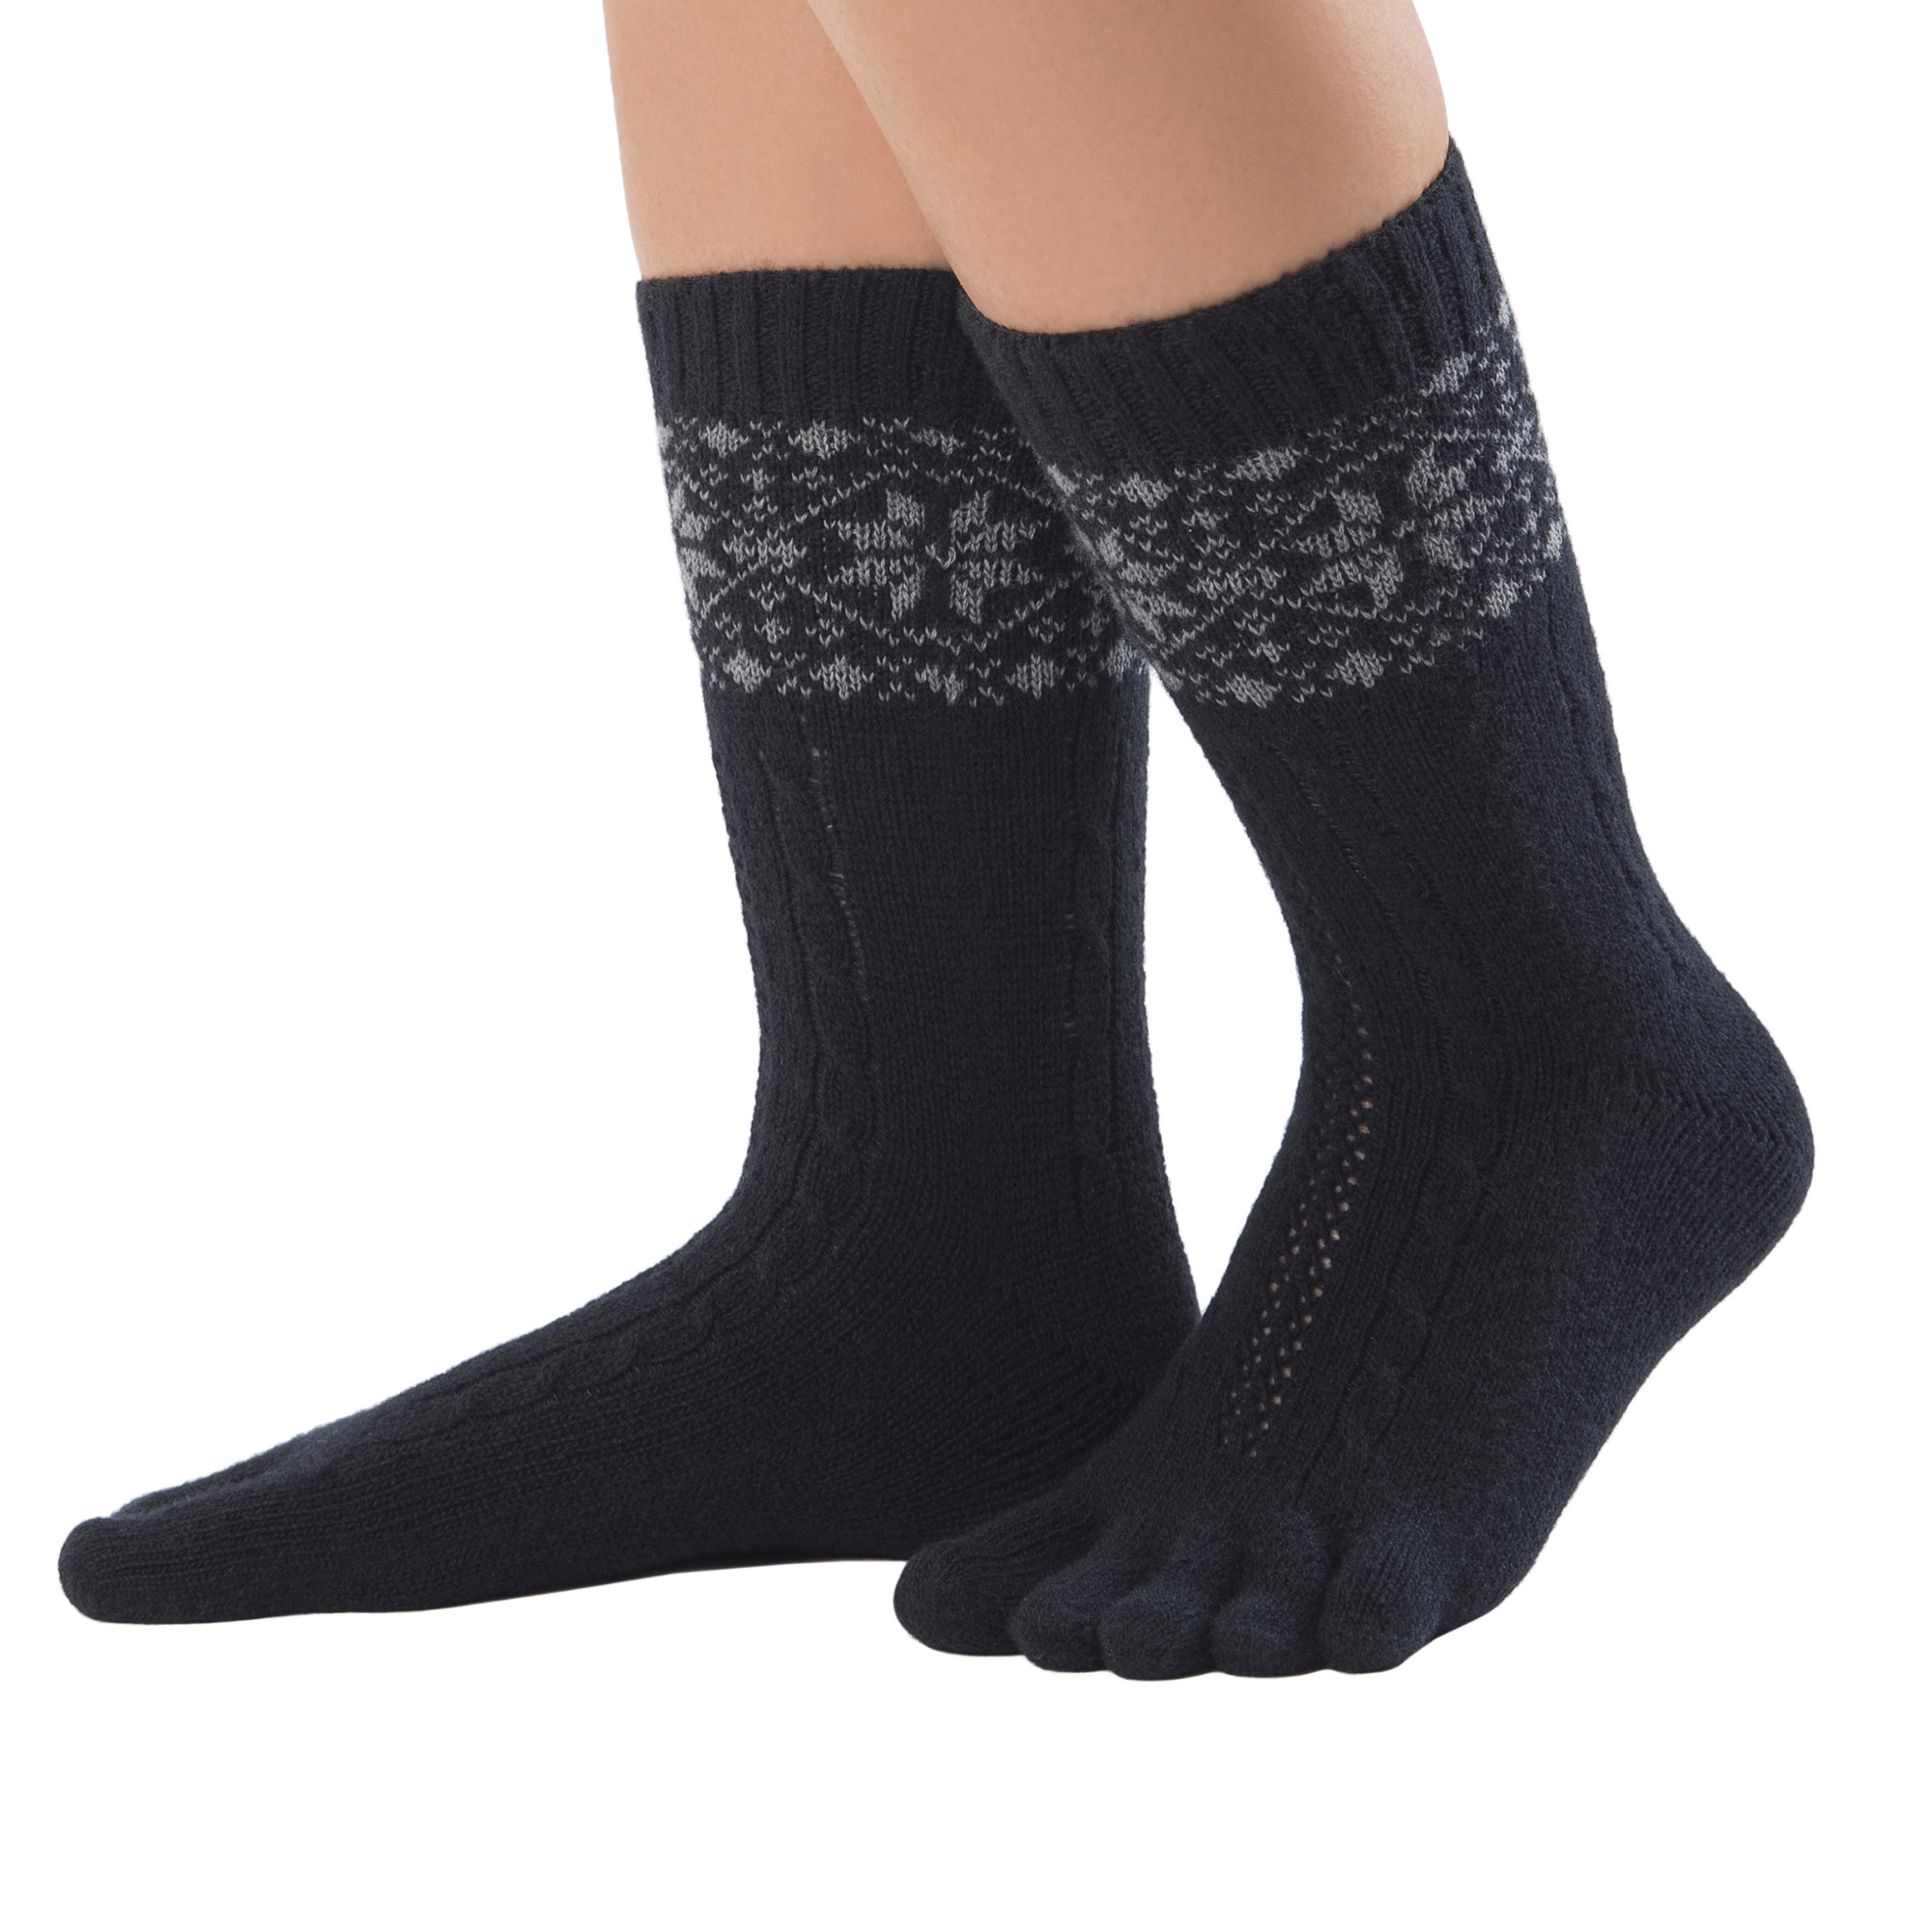  Knitido caldo calze con dita merino e cashmere con motivo a chiazze di neve in nero/grigio